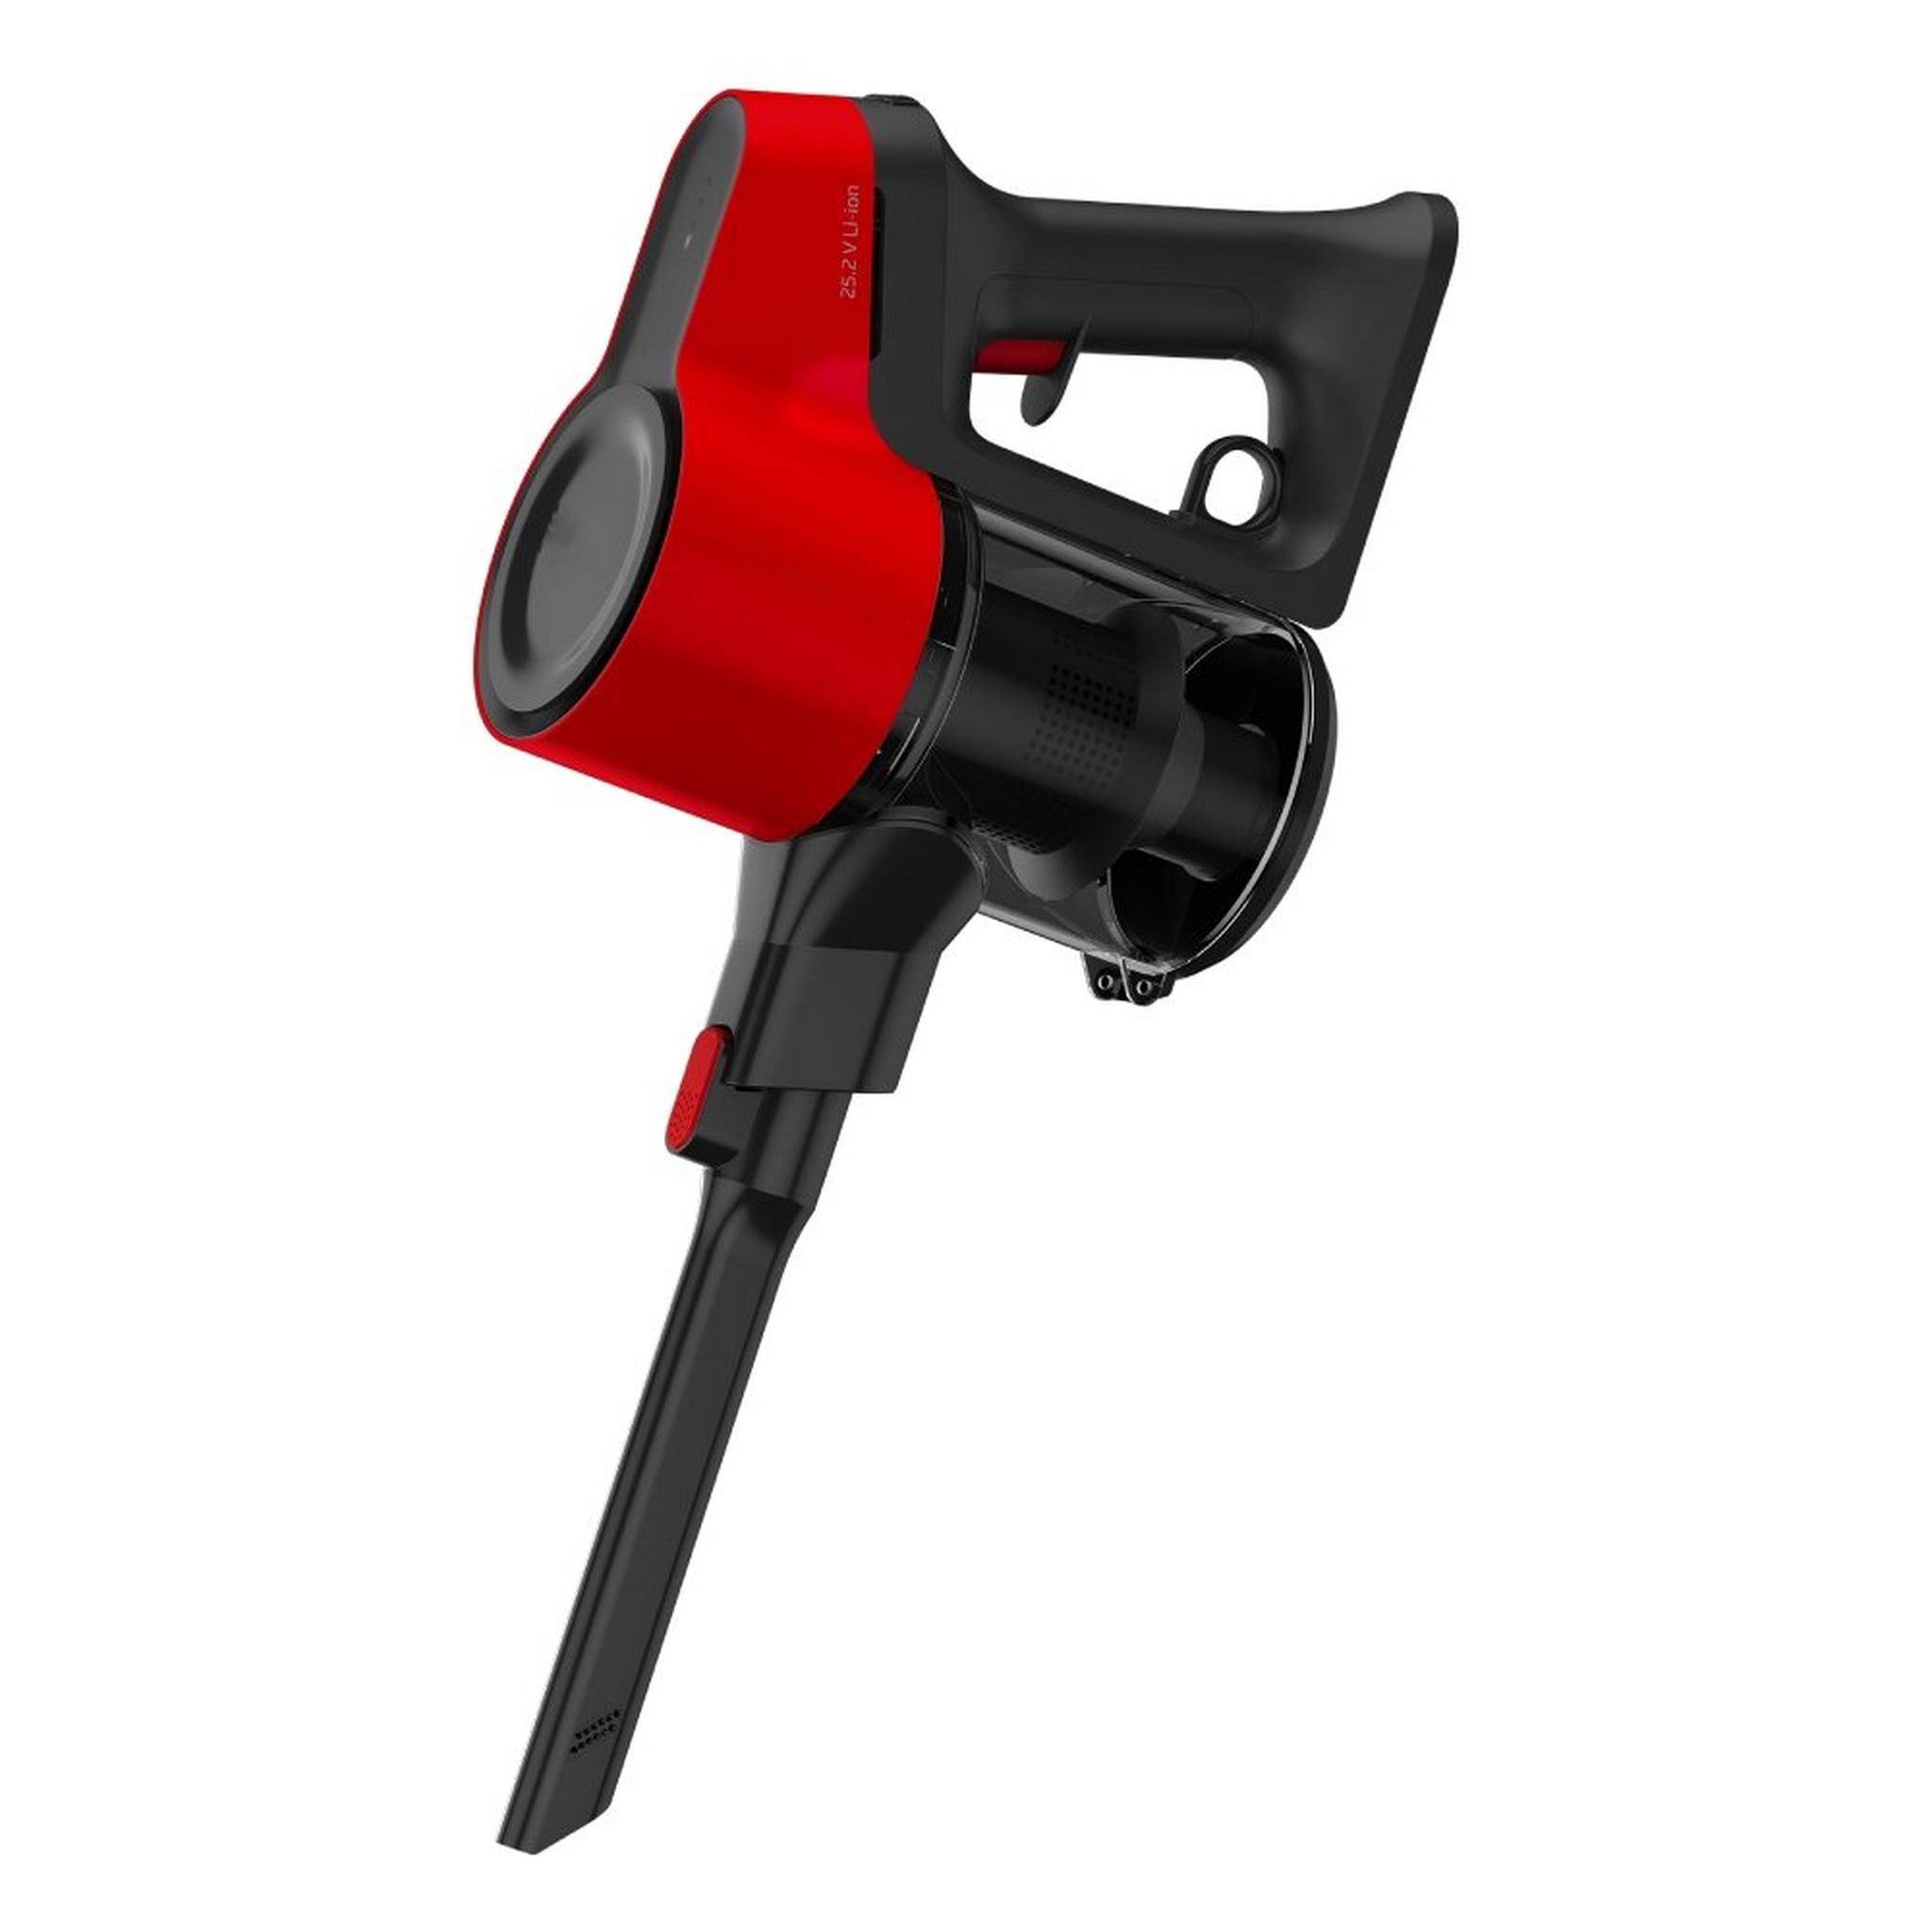 Beko Cordless Vacuum Cleaner, 110W, 0.6 Liter, VRT50121VR - Black/Red